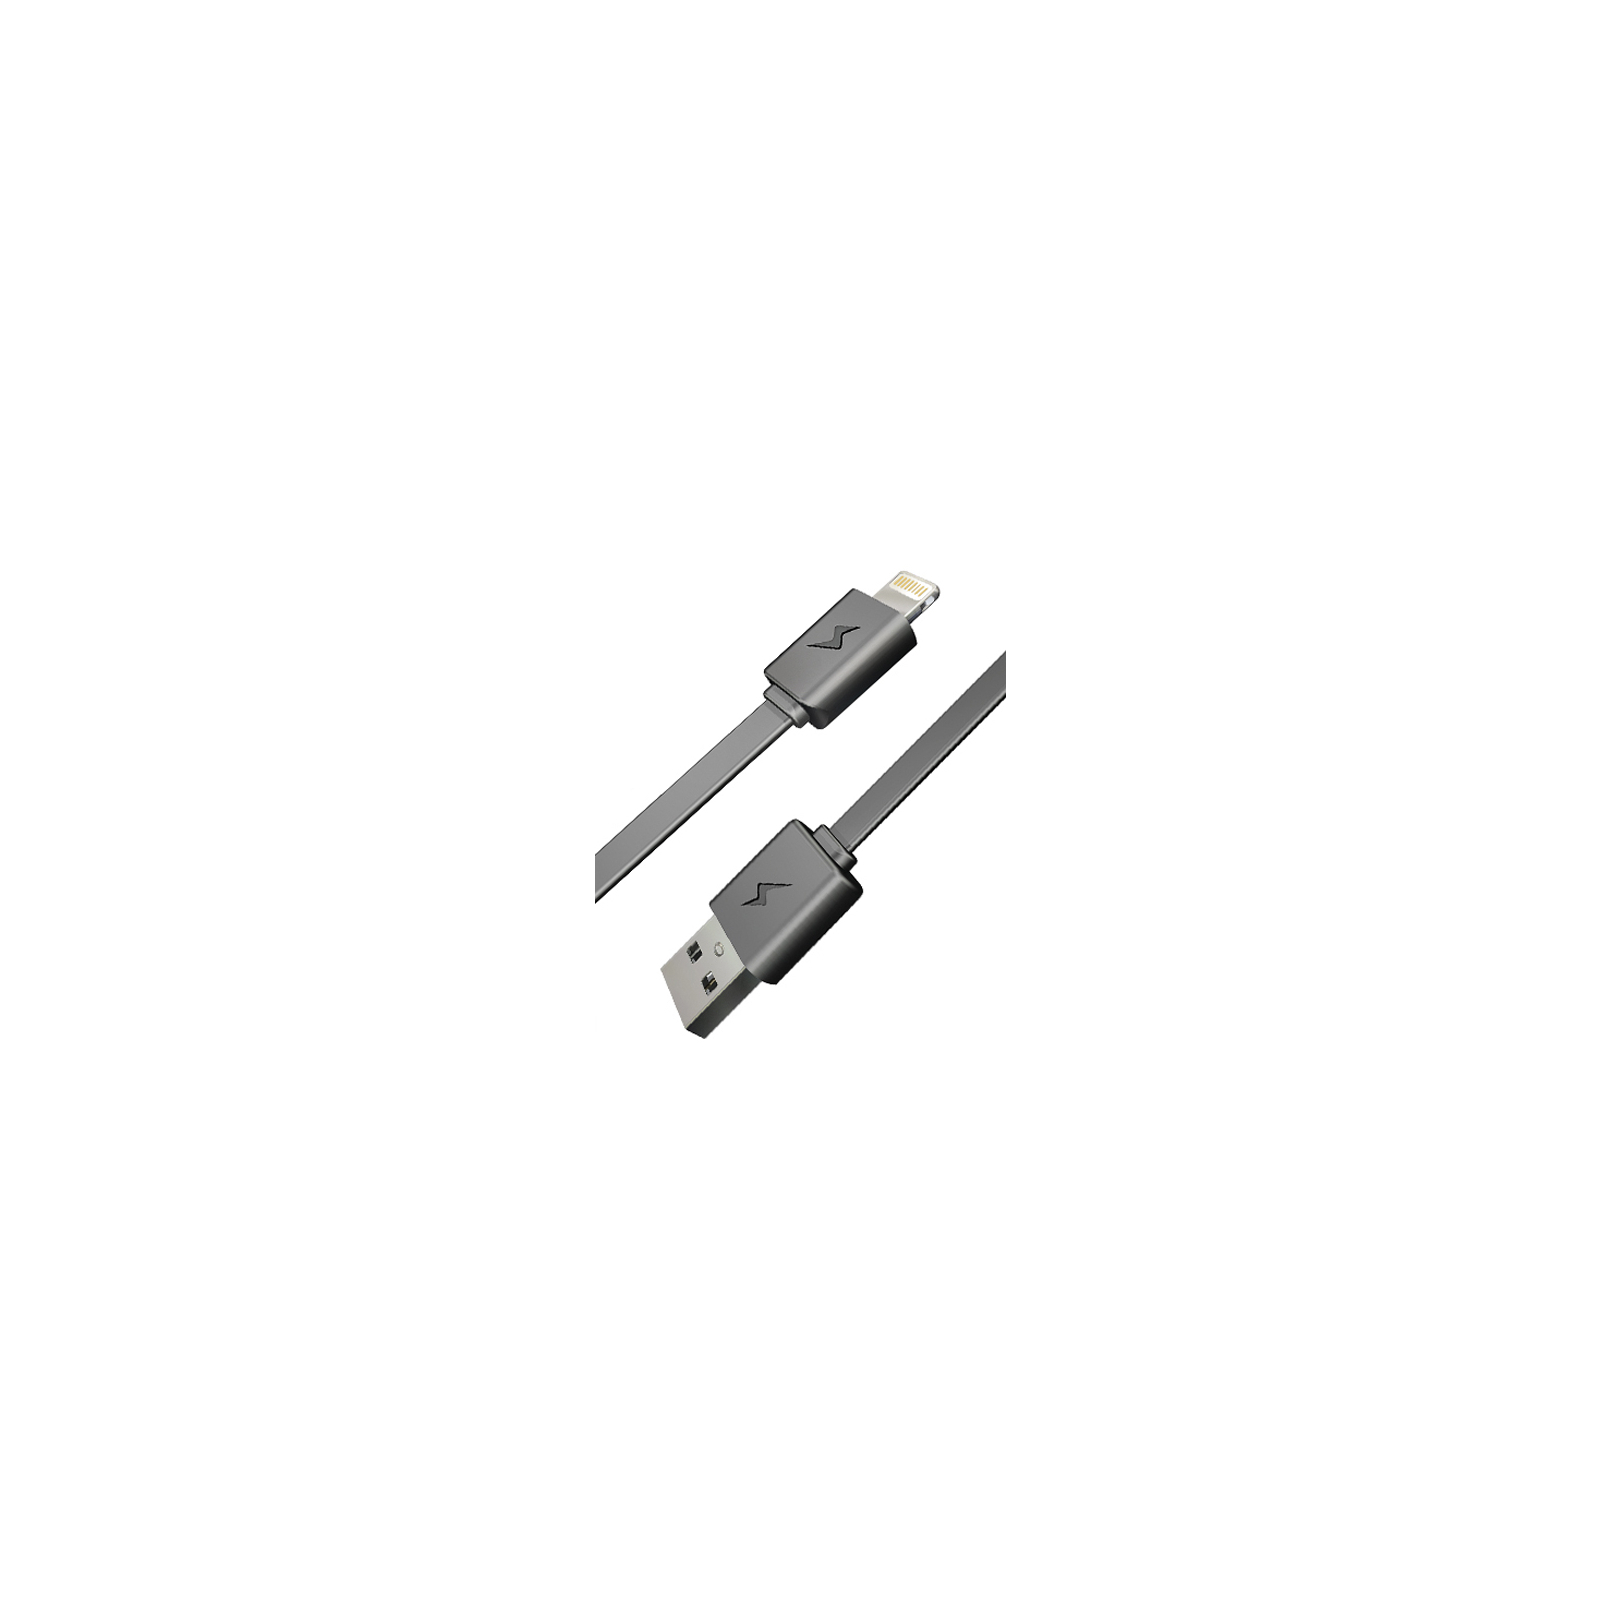 Дата кабель USB 2.0 AM to Lightning 0.75m E-power (EP111DC) изображение 2